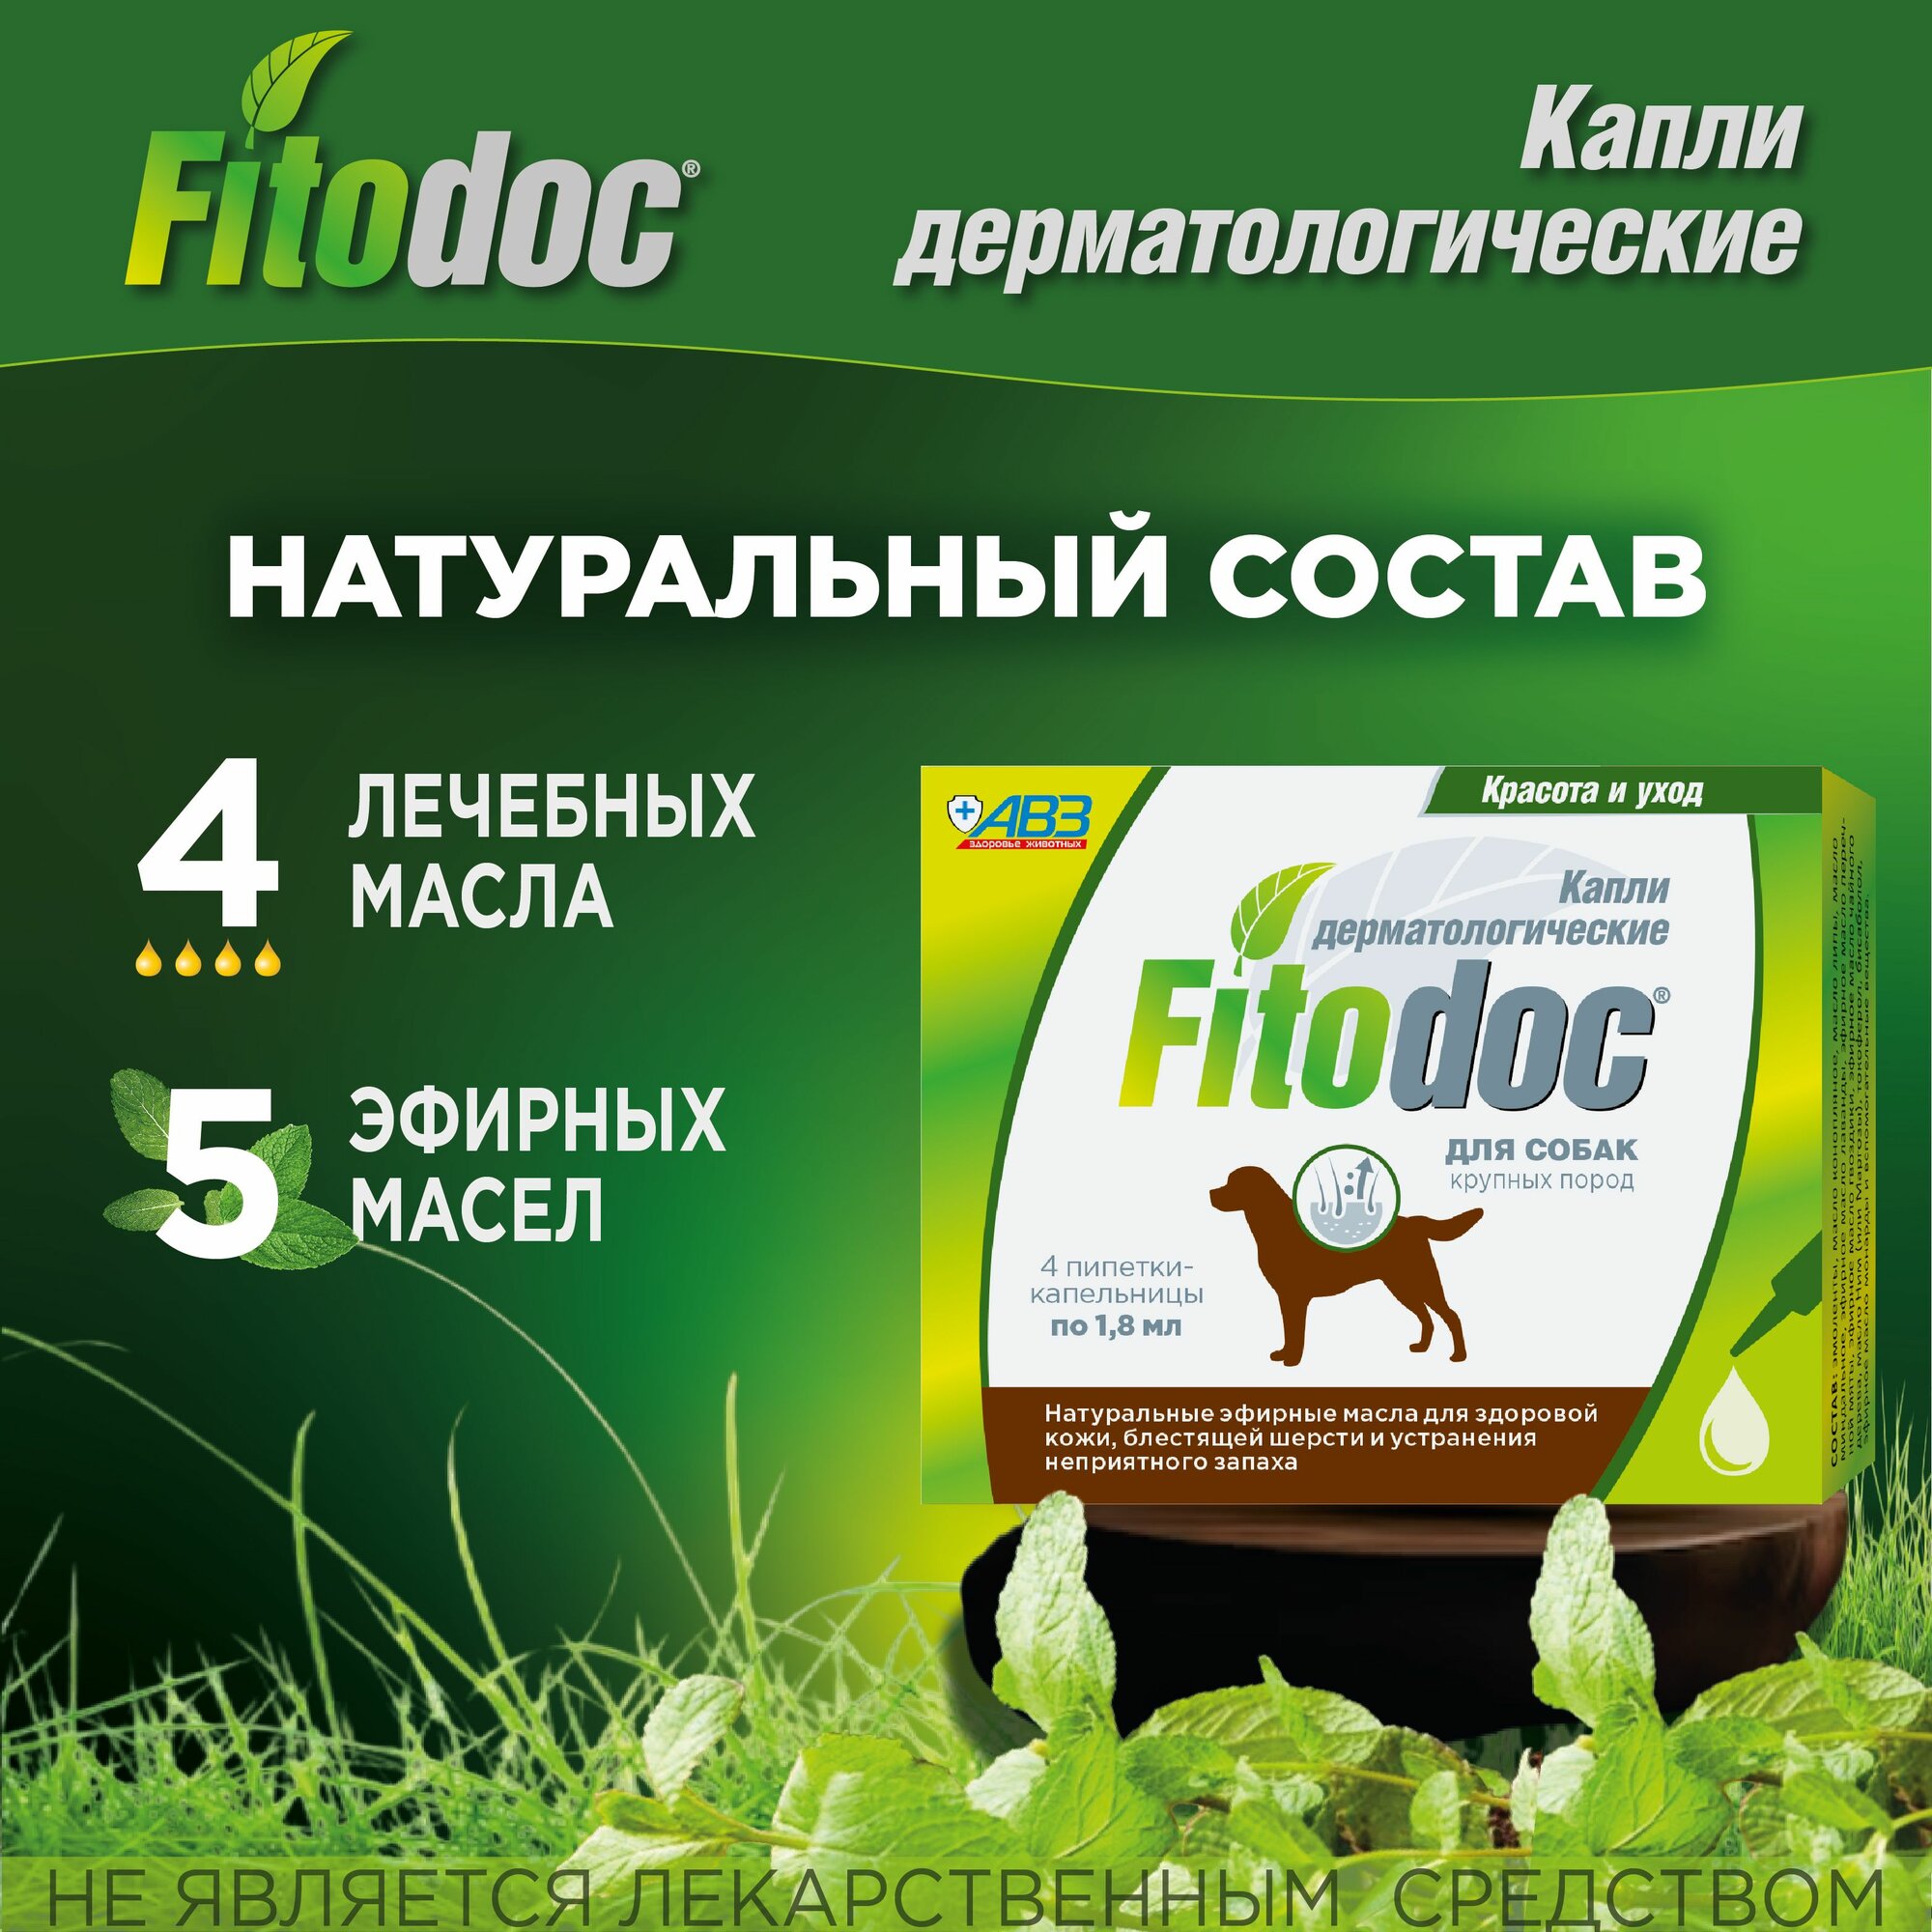 Капли дерматологические для кожи и шерсти АВЗ FitoDoc для собак крупных пород 4шт по 1,8мл